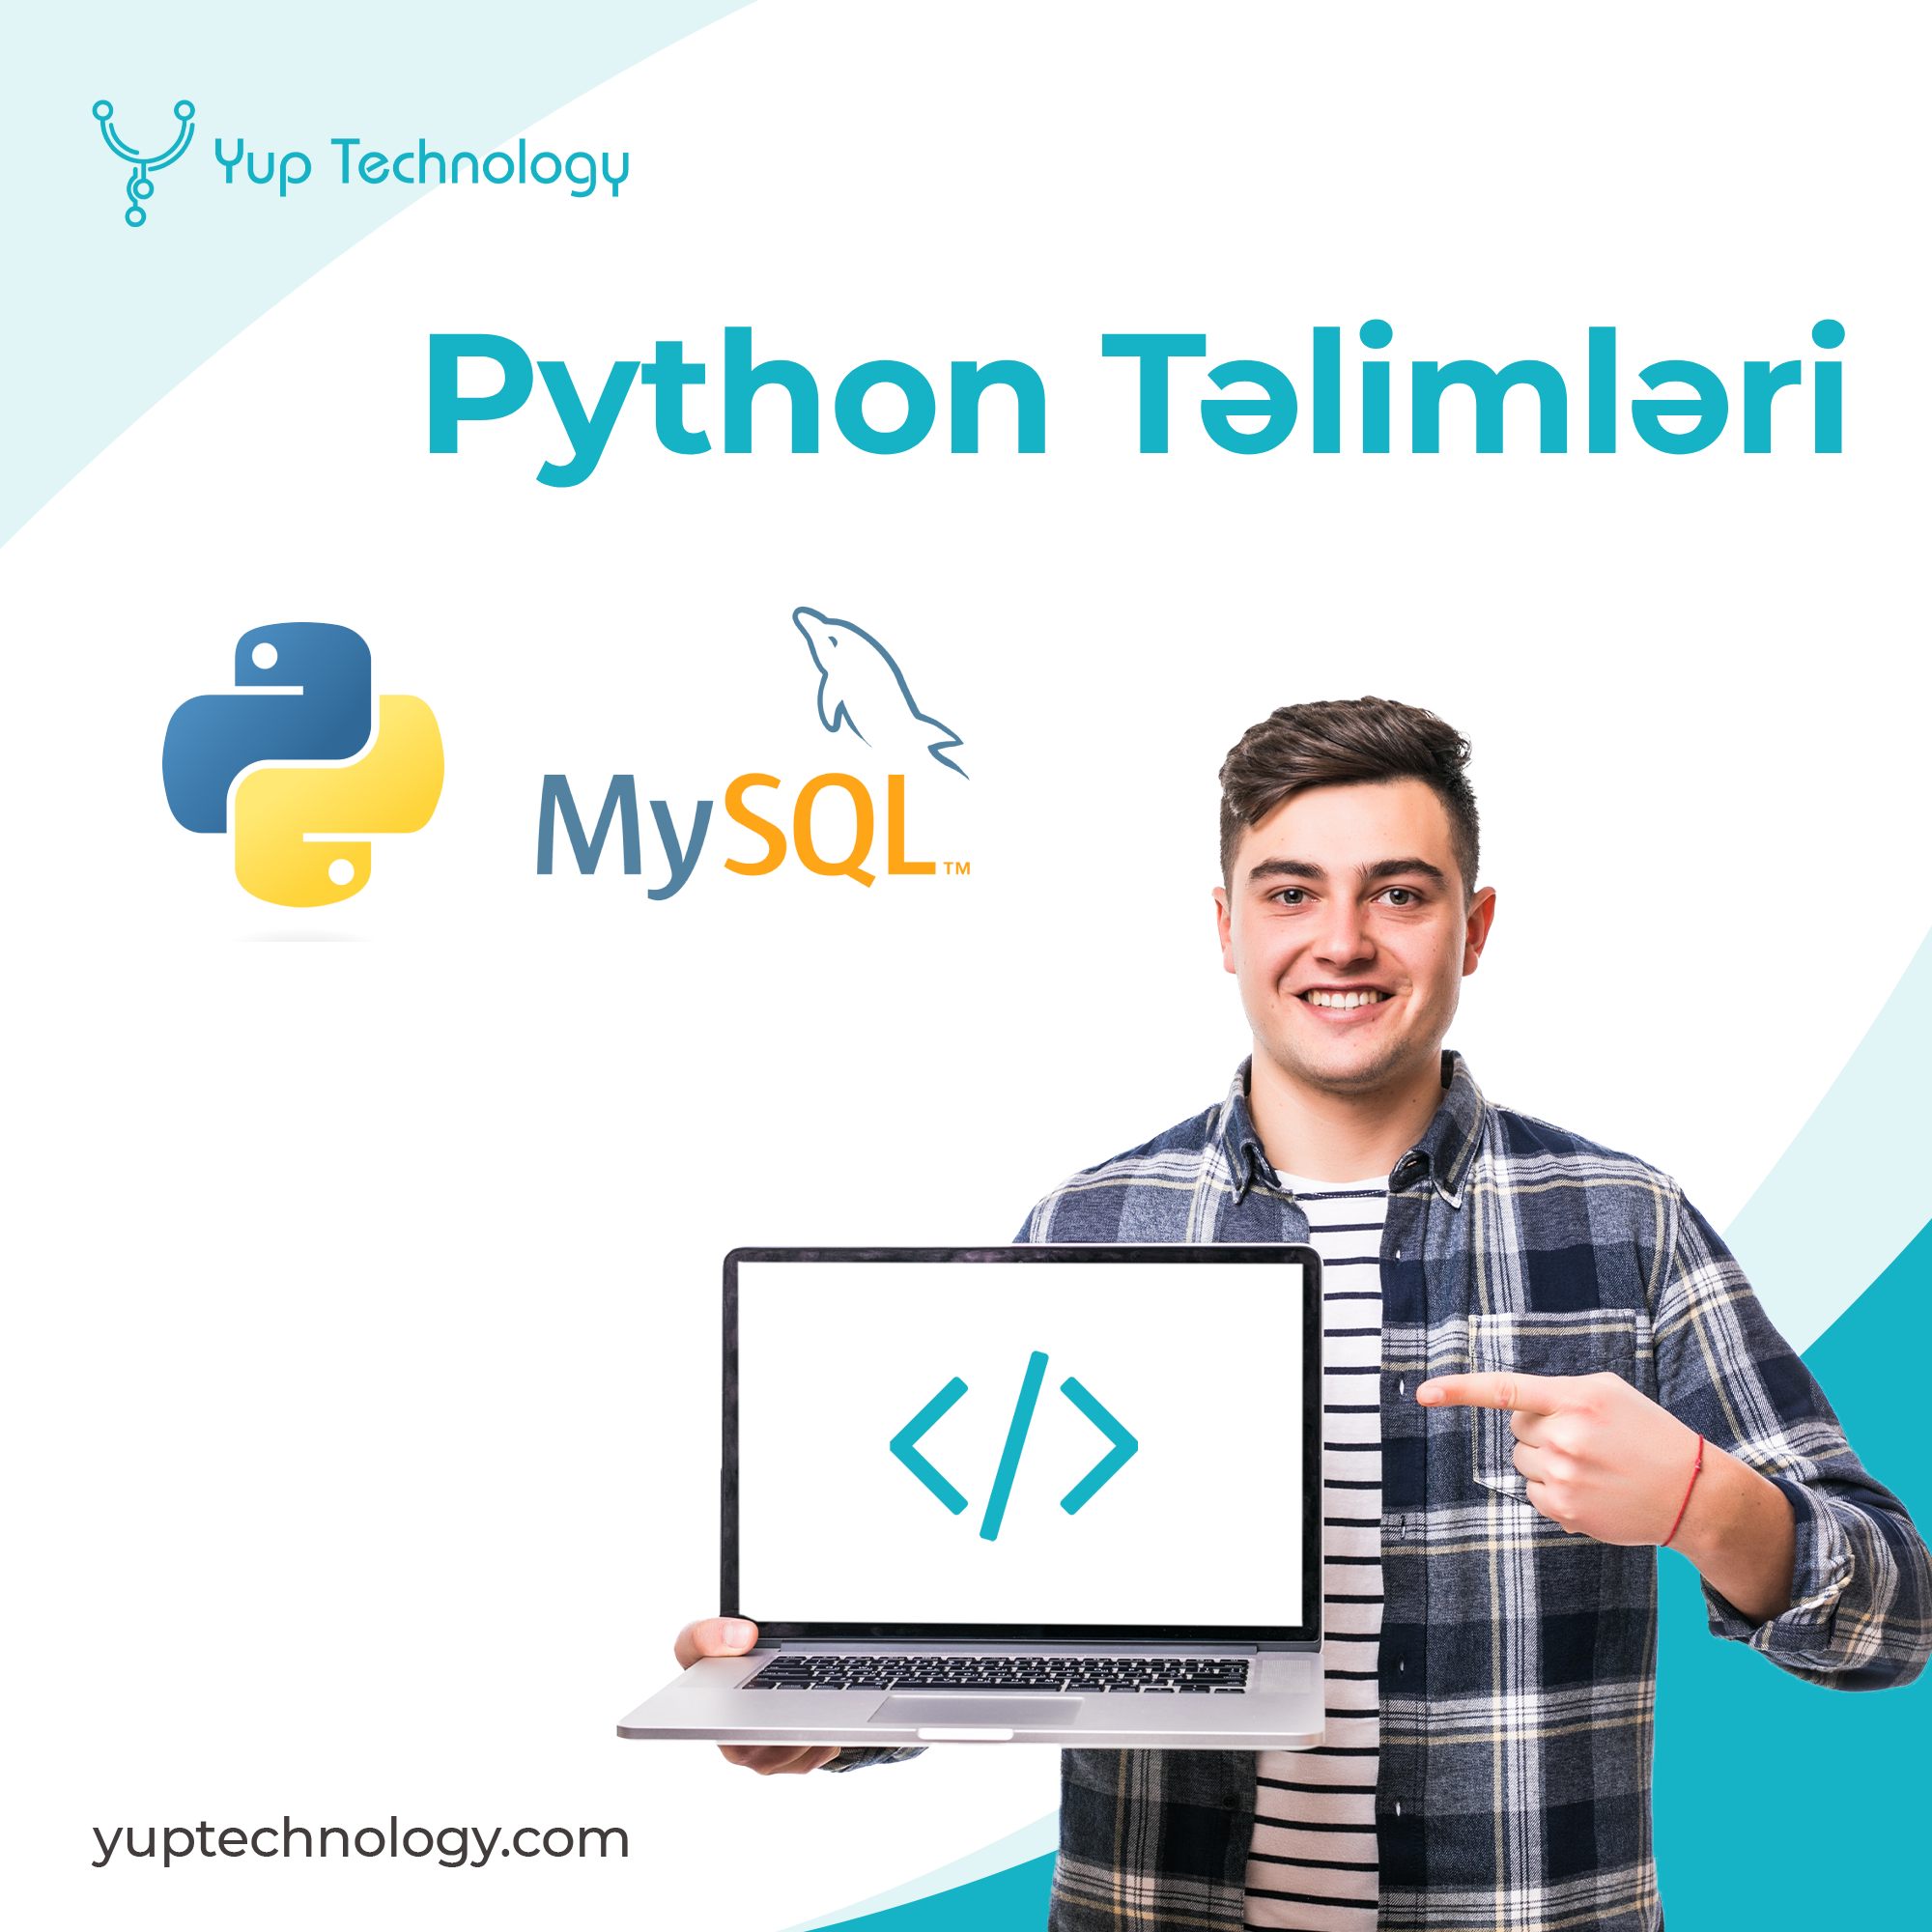 Pythoni programmeerimise koolitus